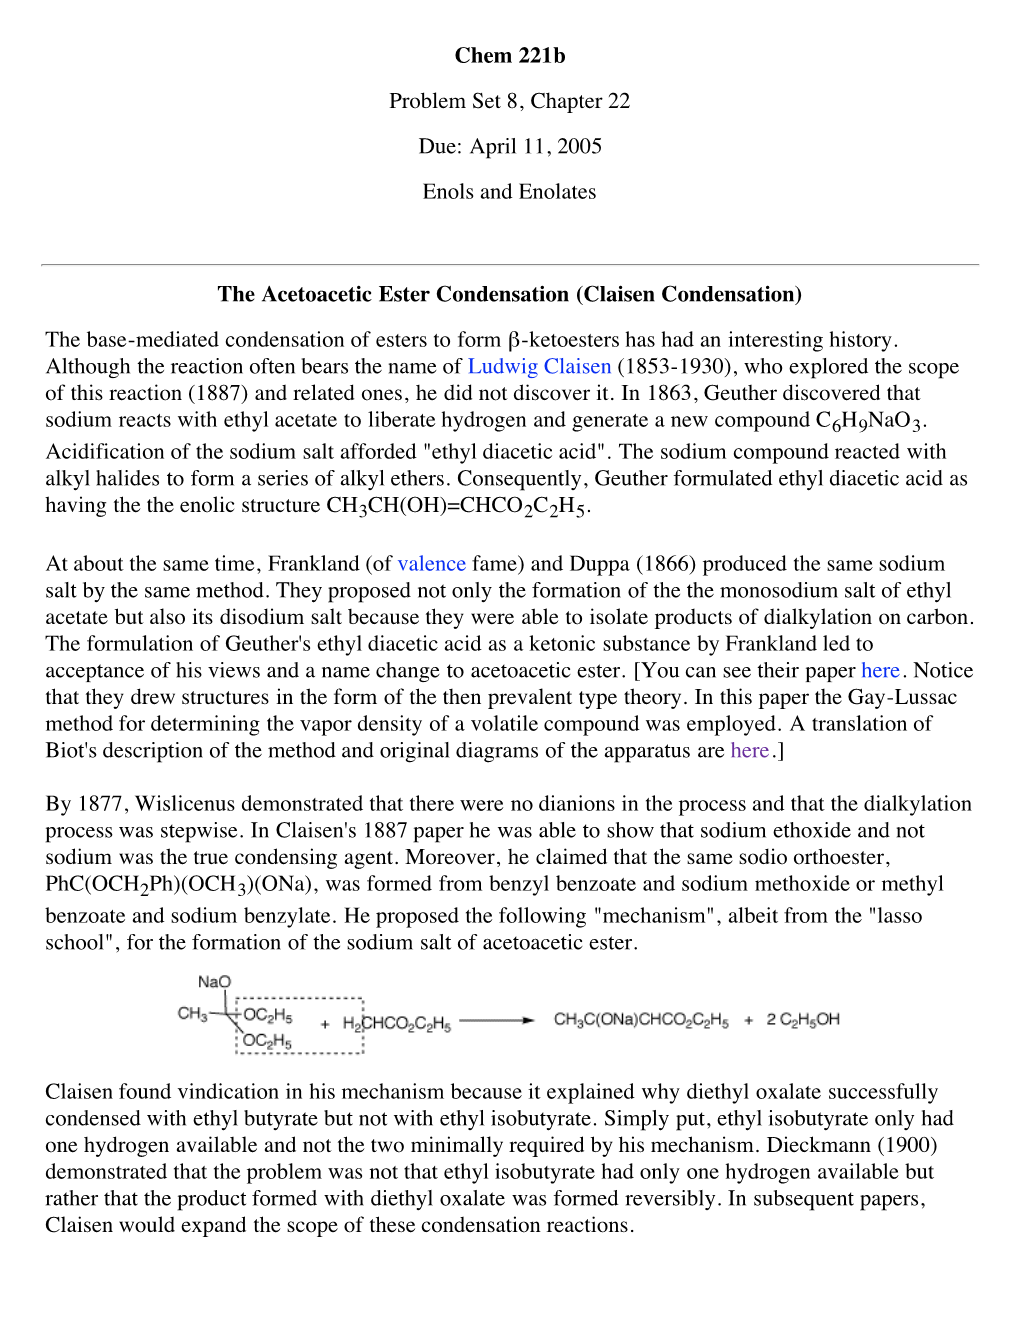 Chem 221B Problem Set 8, Chapter 22 Due: April 11, 2005 Enols and Enolates